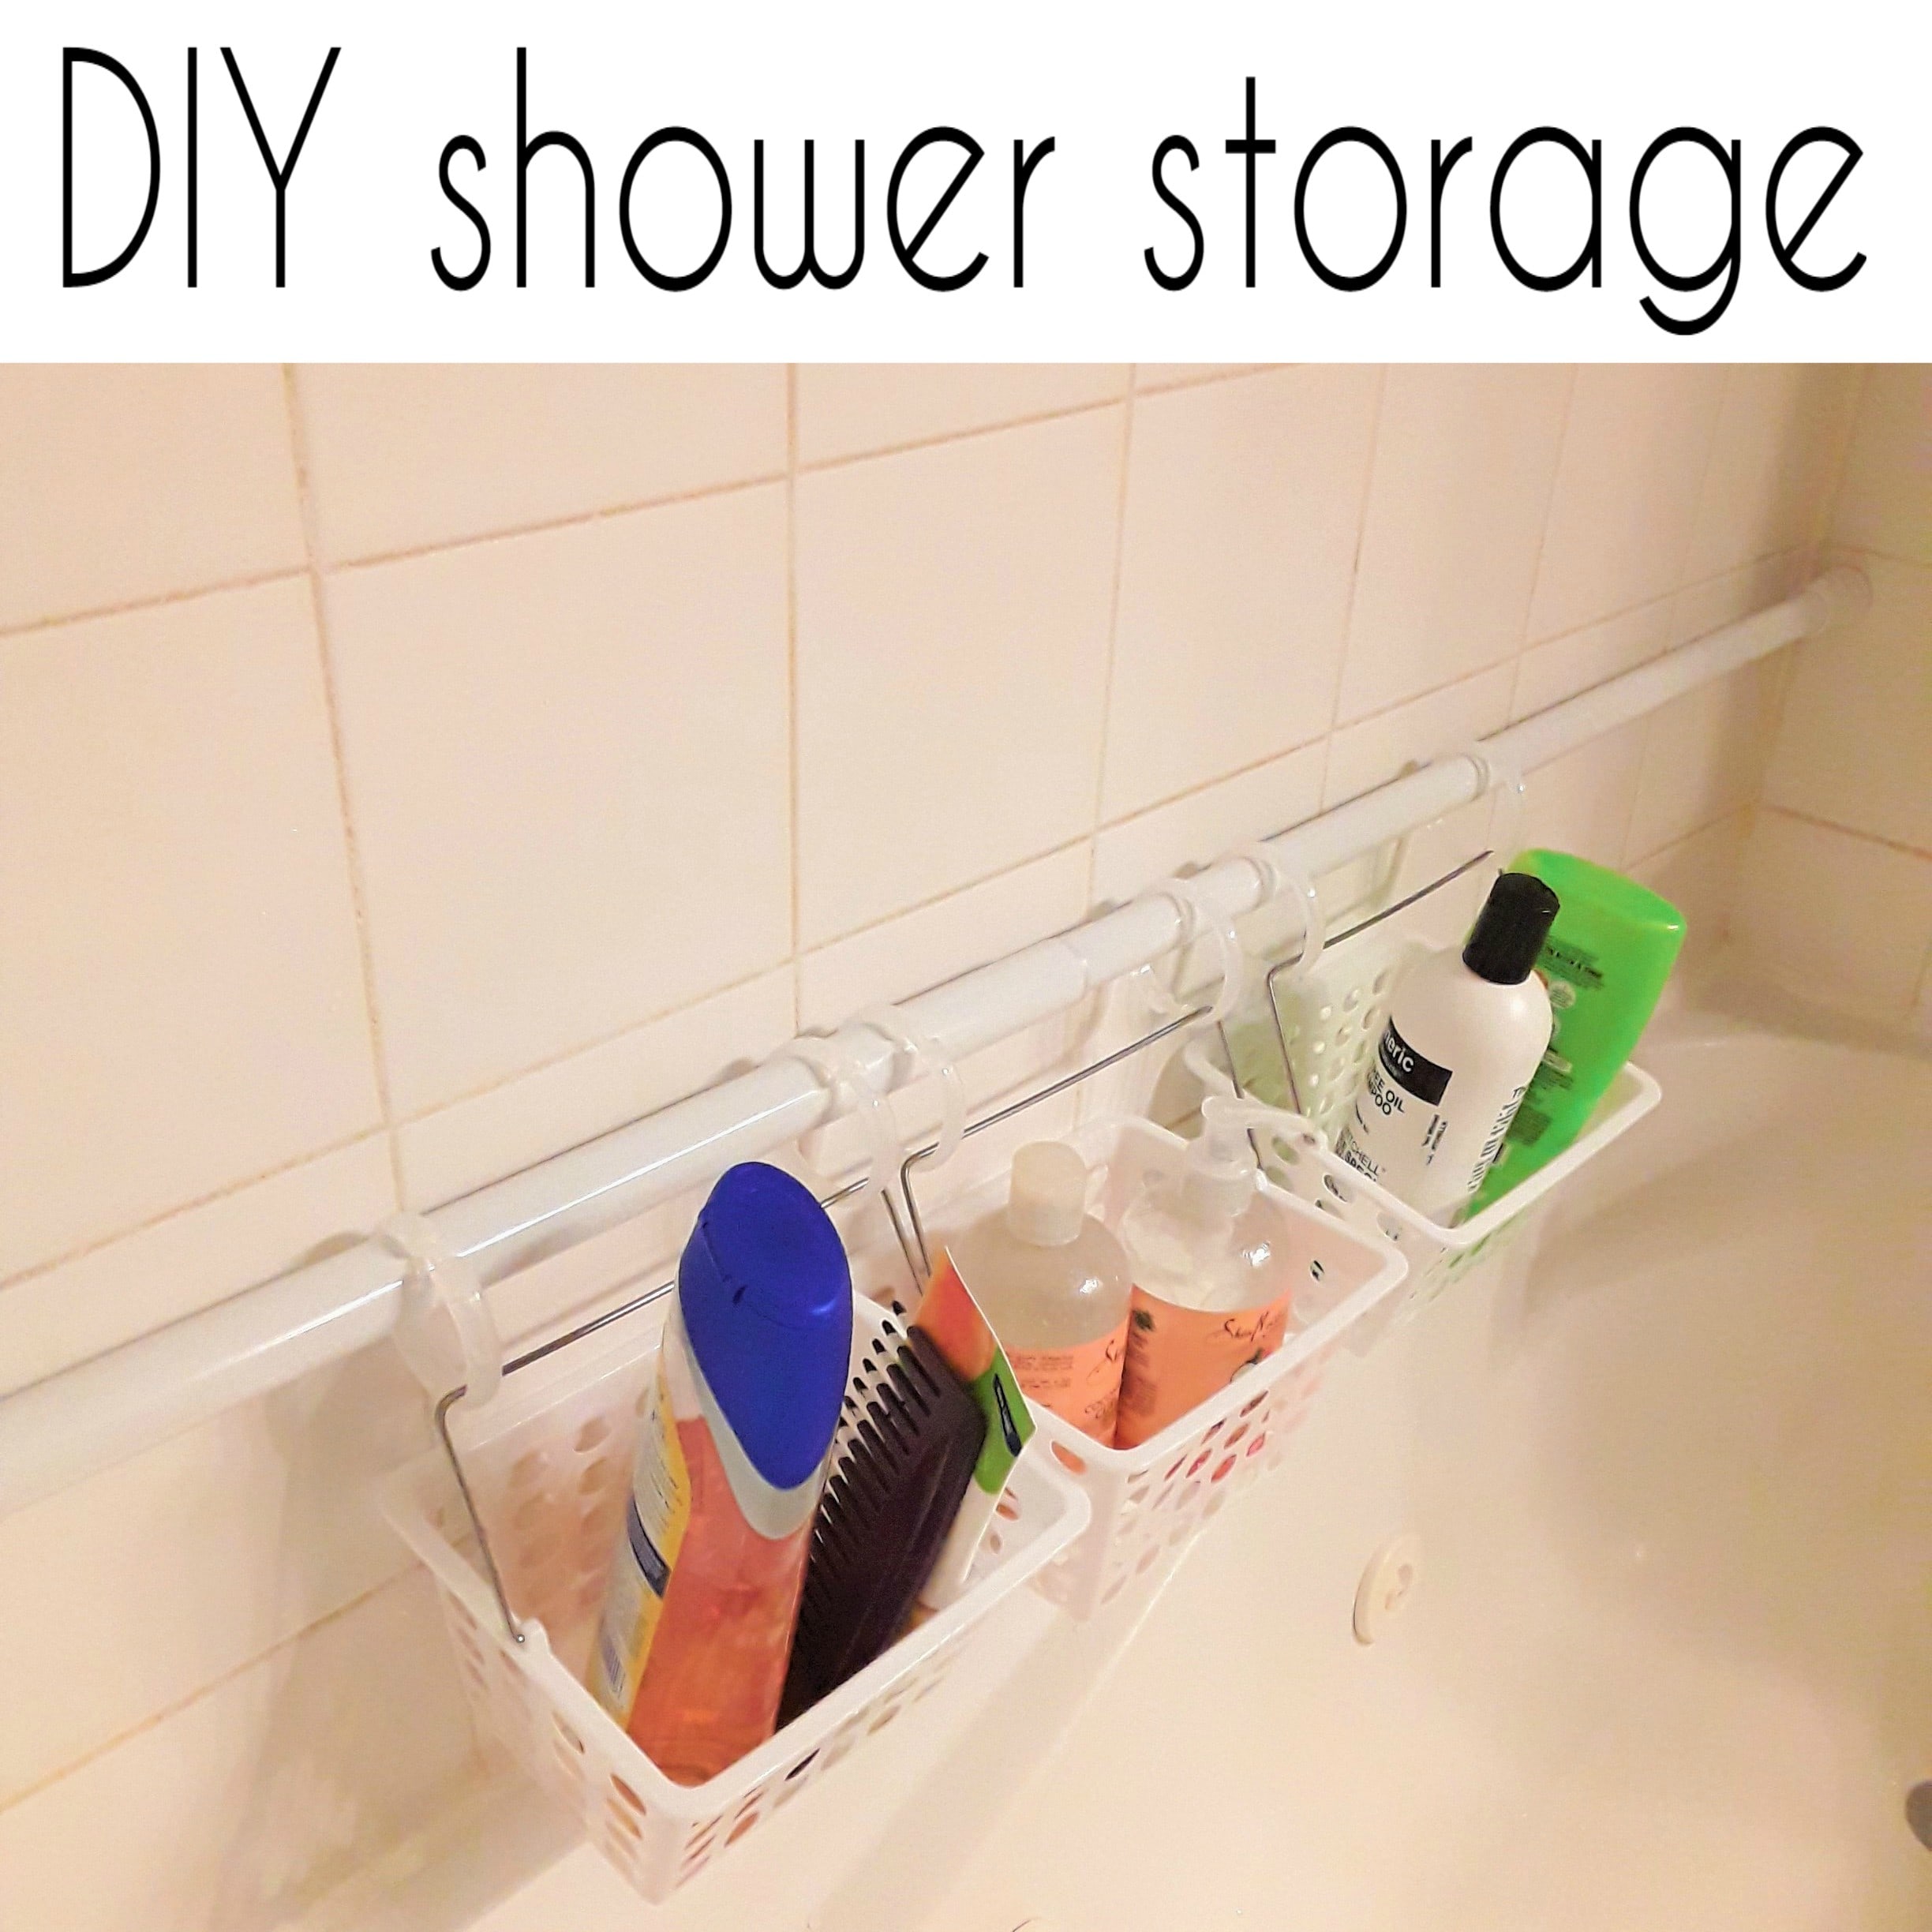 DIY shower storage organization